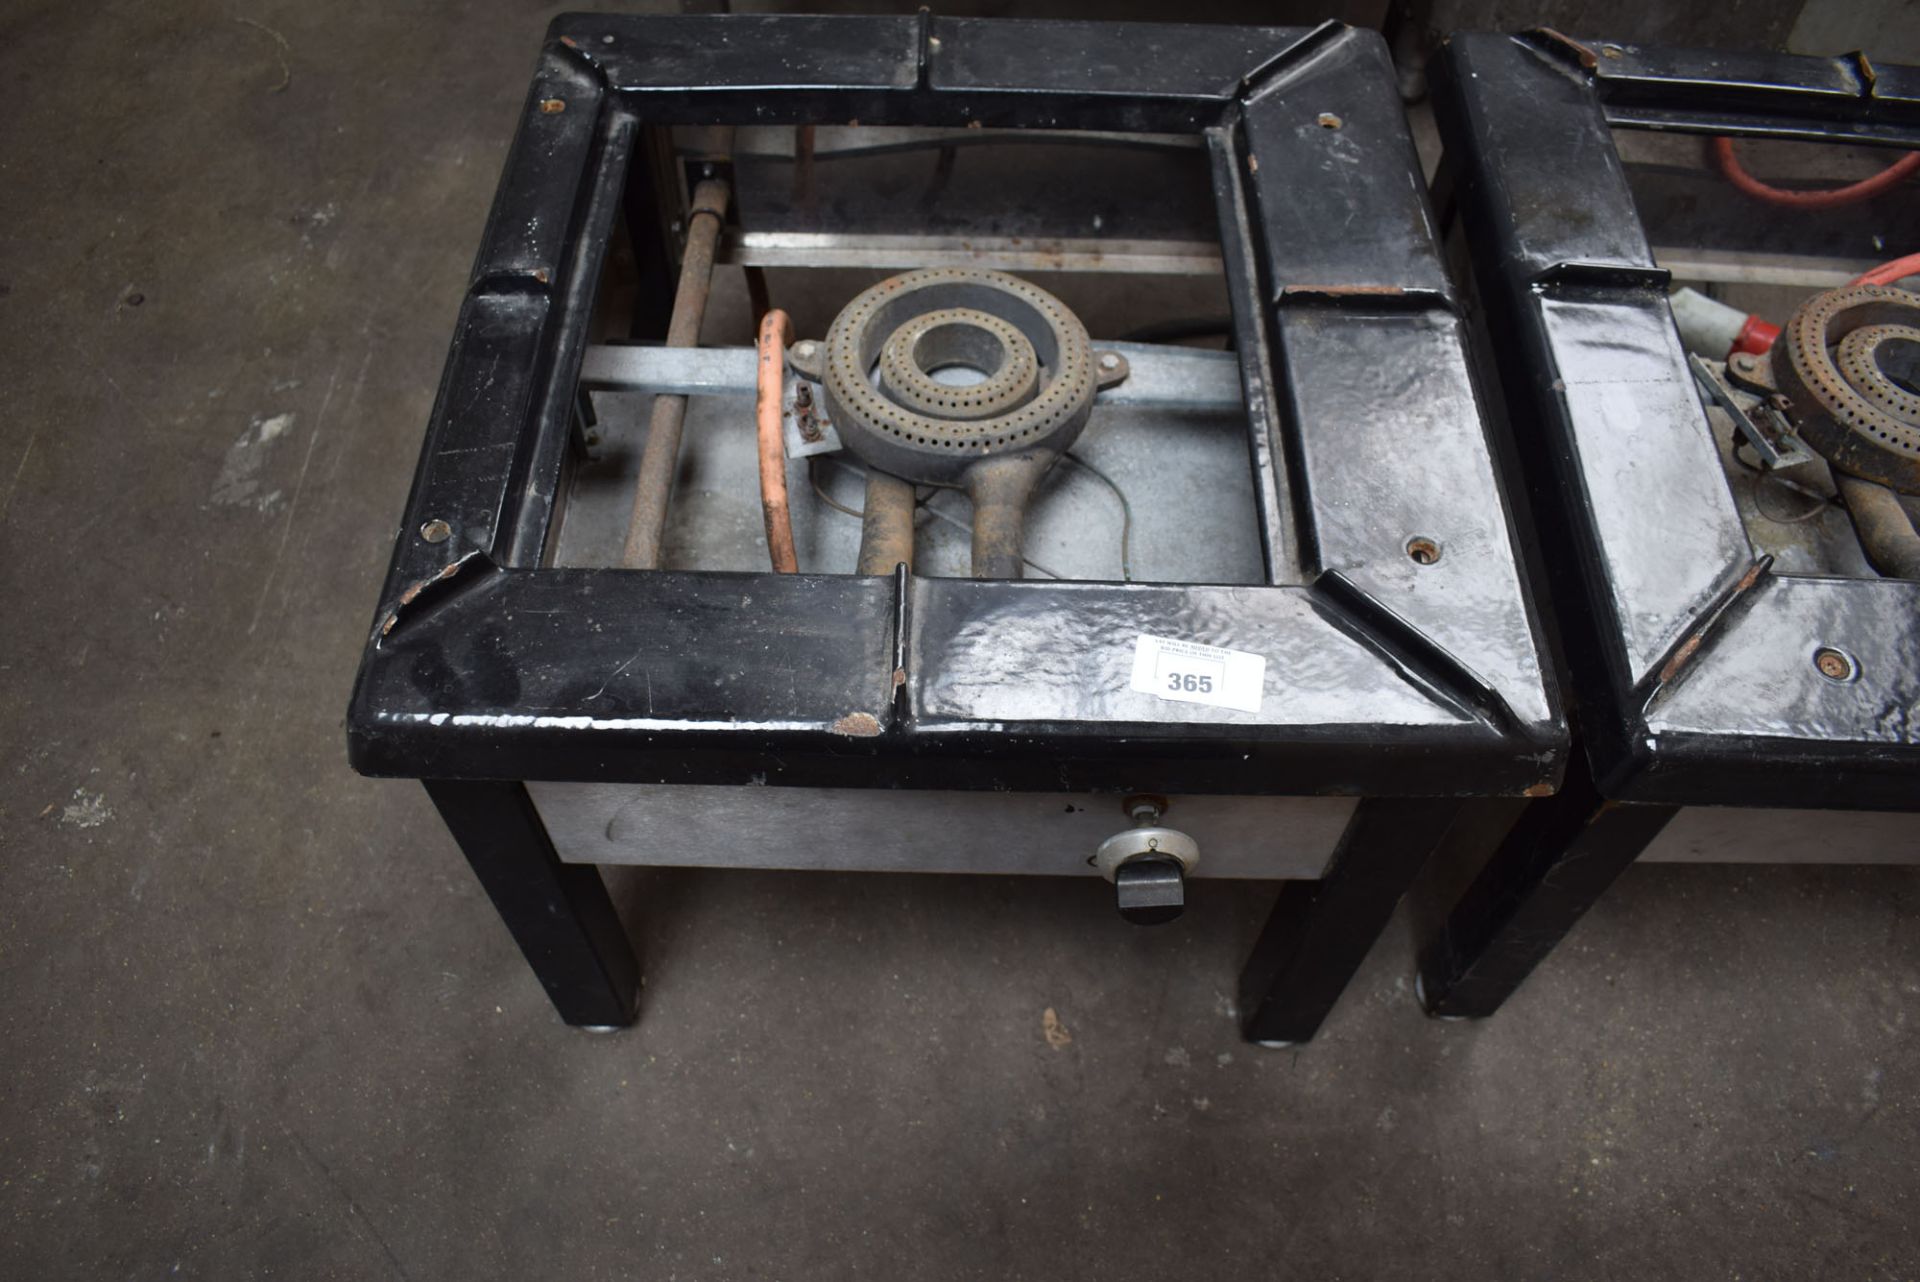 60cm square LPG stockpot boiler